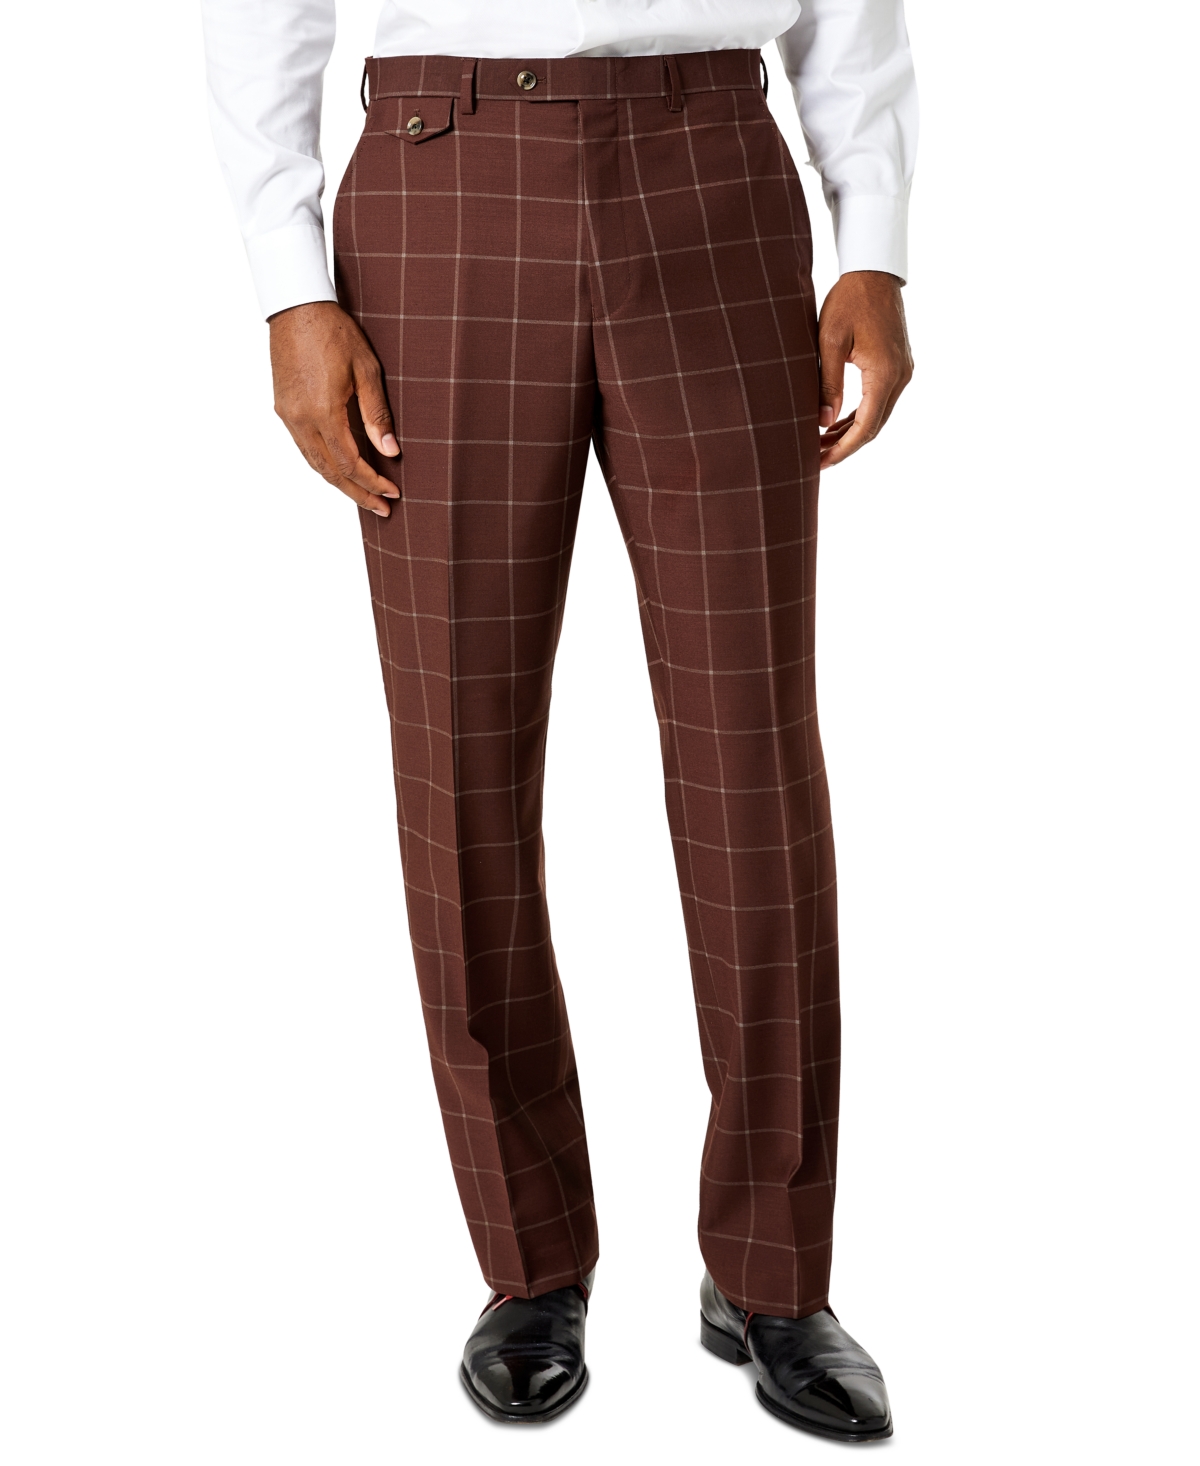 Tayion Classic Fit Suit Separates Pants, Pants